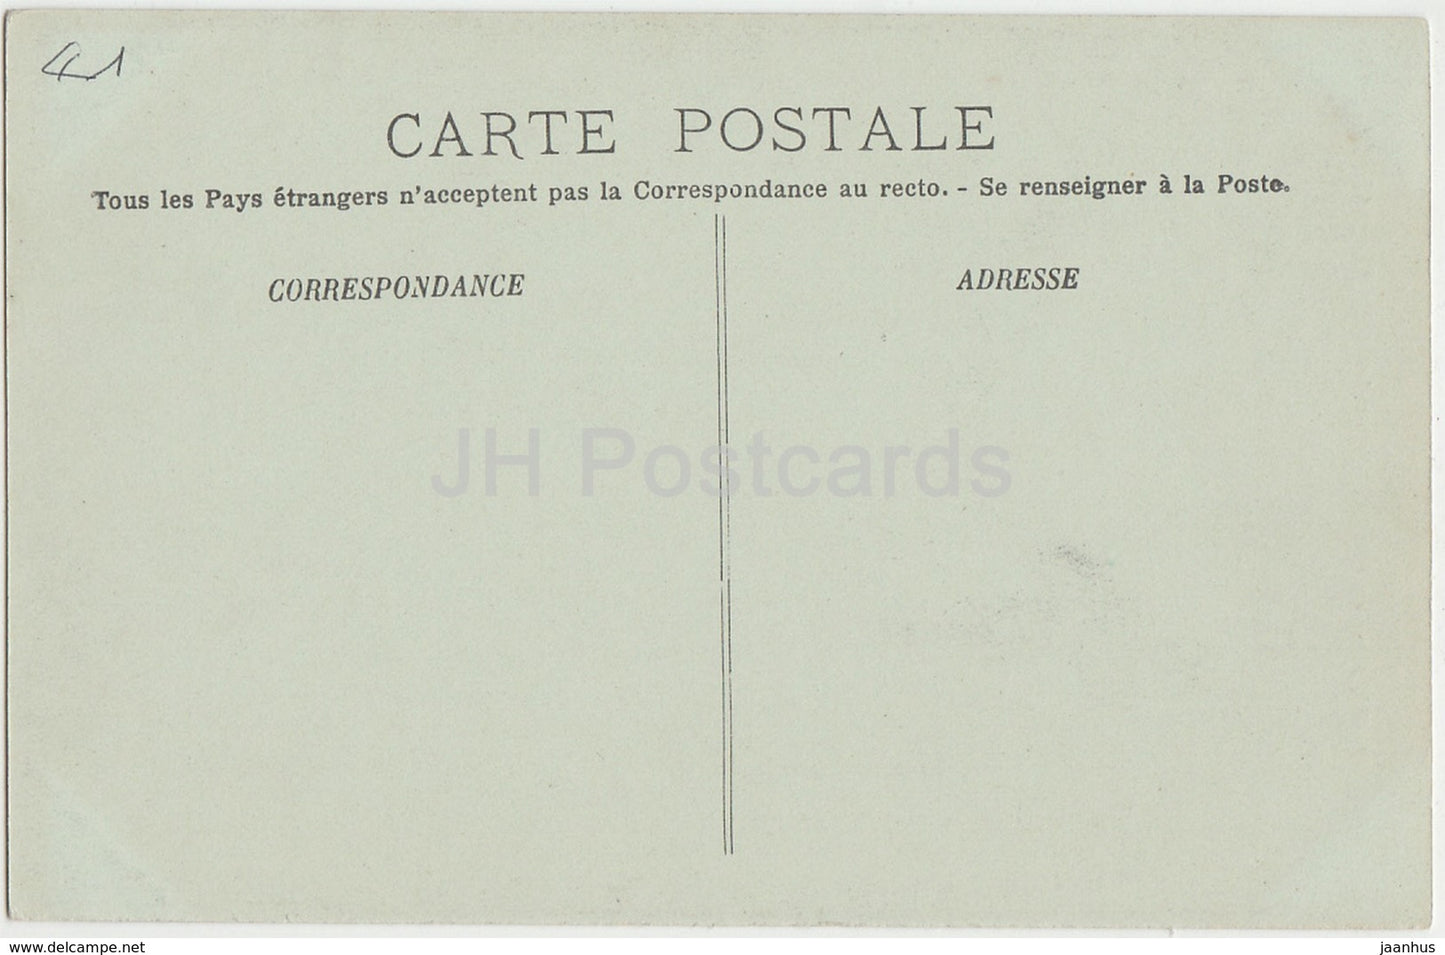 Blois - La Chateau - Aile Francois Ier - Cheminee de la Bibliotheque de Medicis - 86 - alte Postkarte - Frankreich - unbenutzt